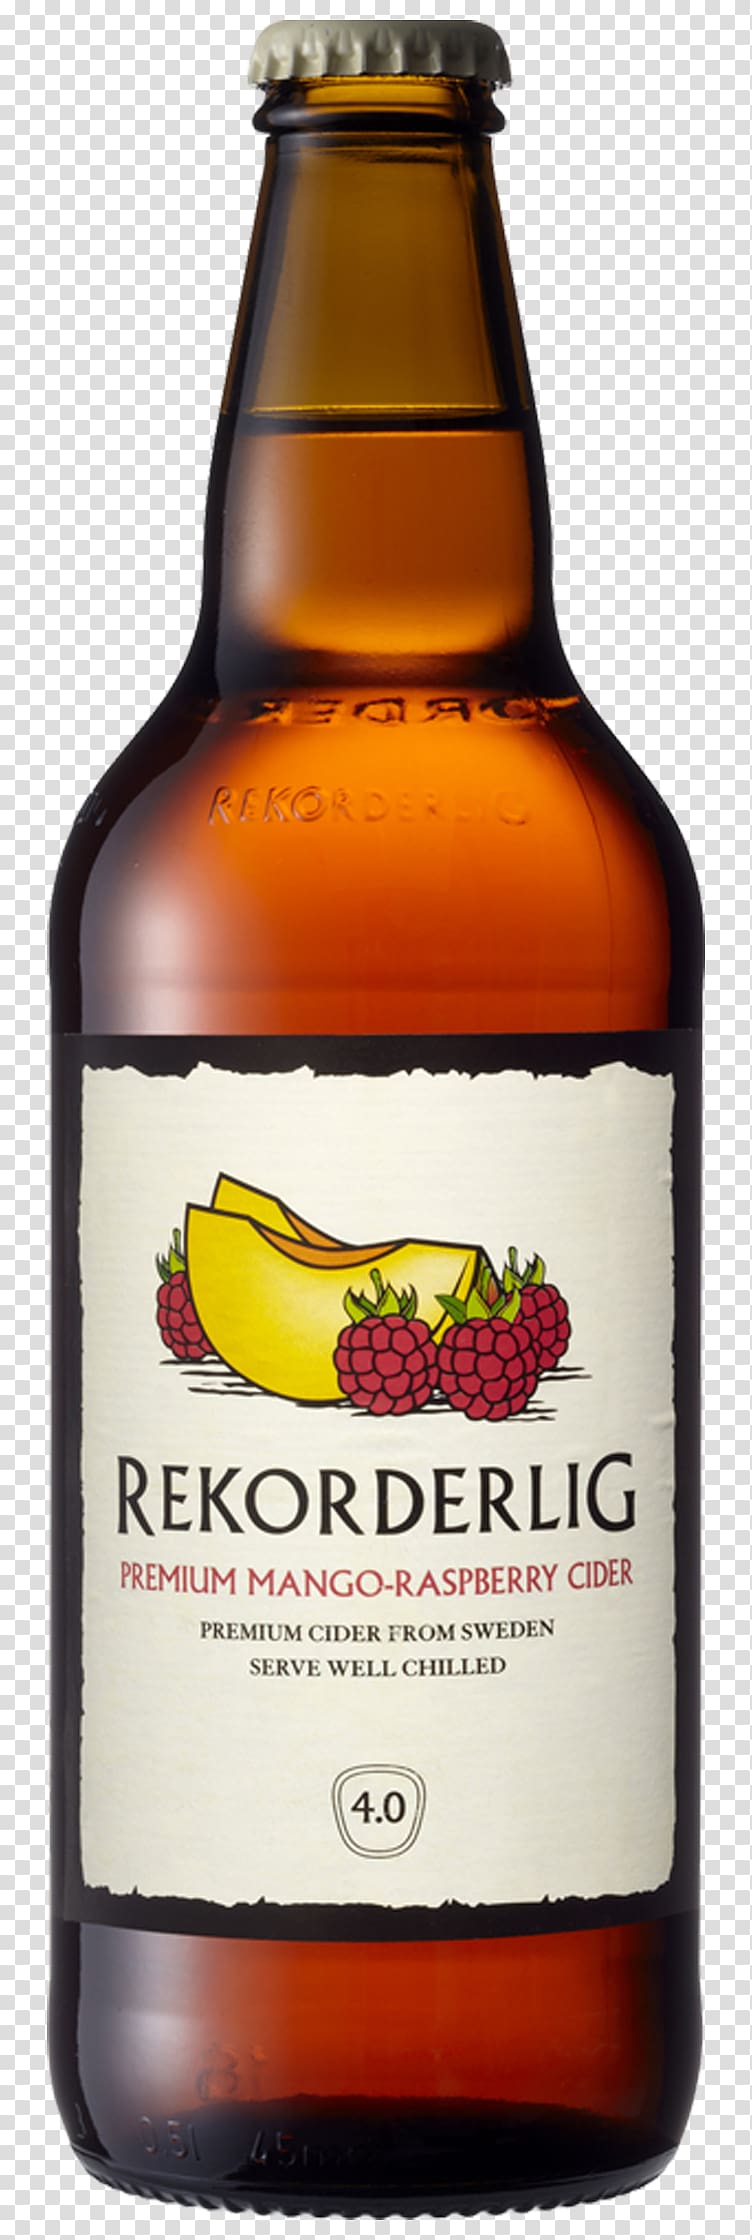 Cider Beer Distilled beverage Rekorderlig Raspberry, beer transparent background PNG clipart